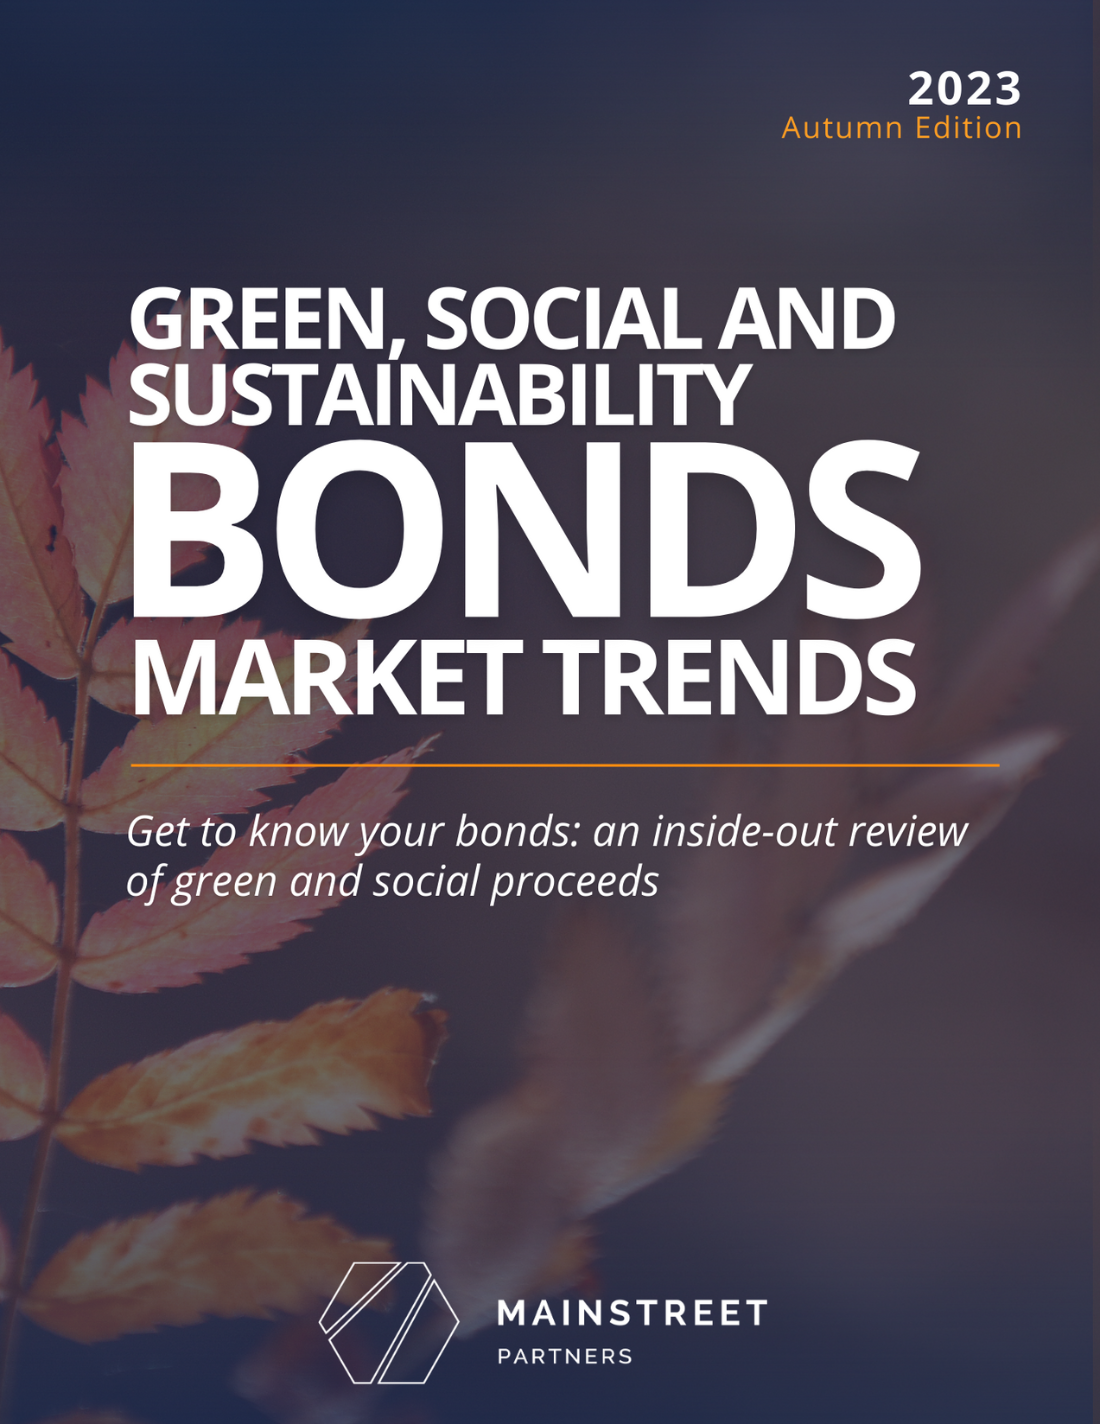 GSS Bonds Market Trend, Q3 2023 - MainStreet Partners